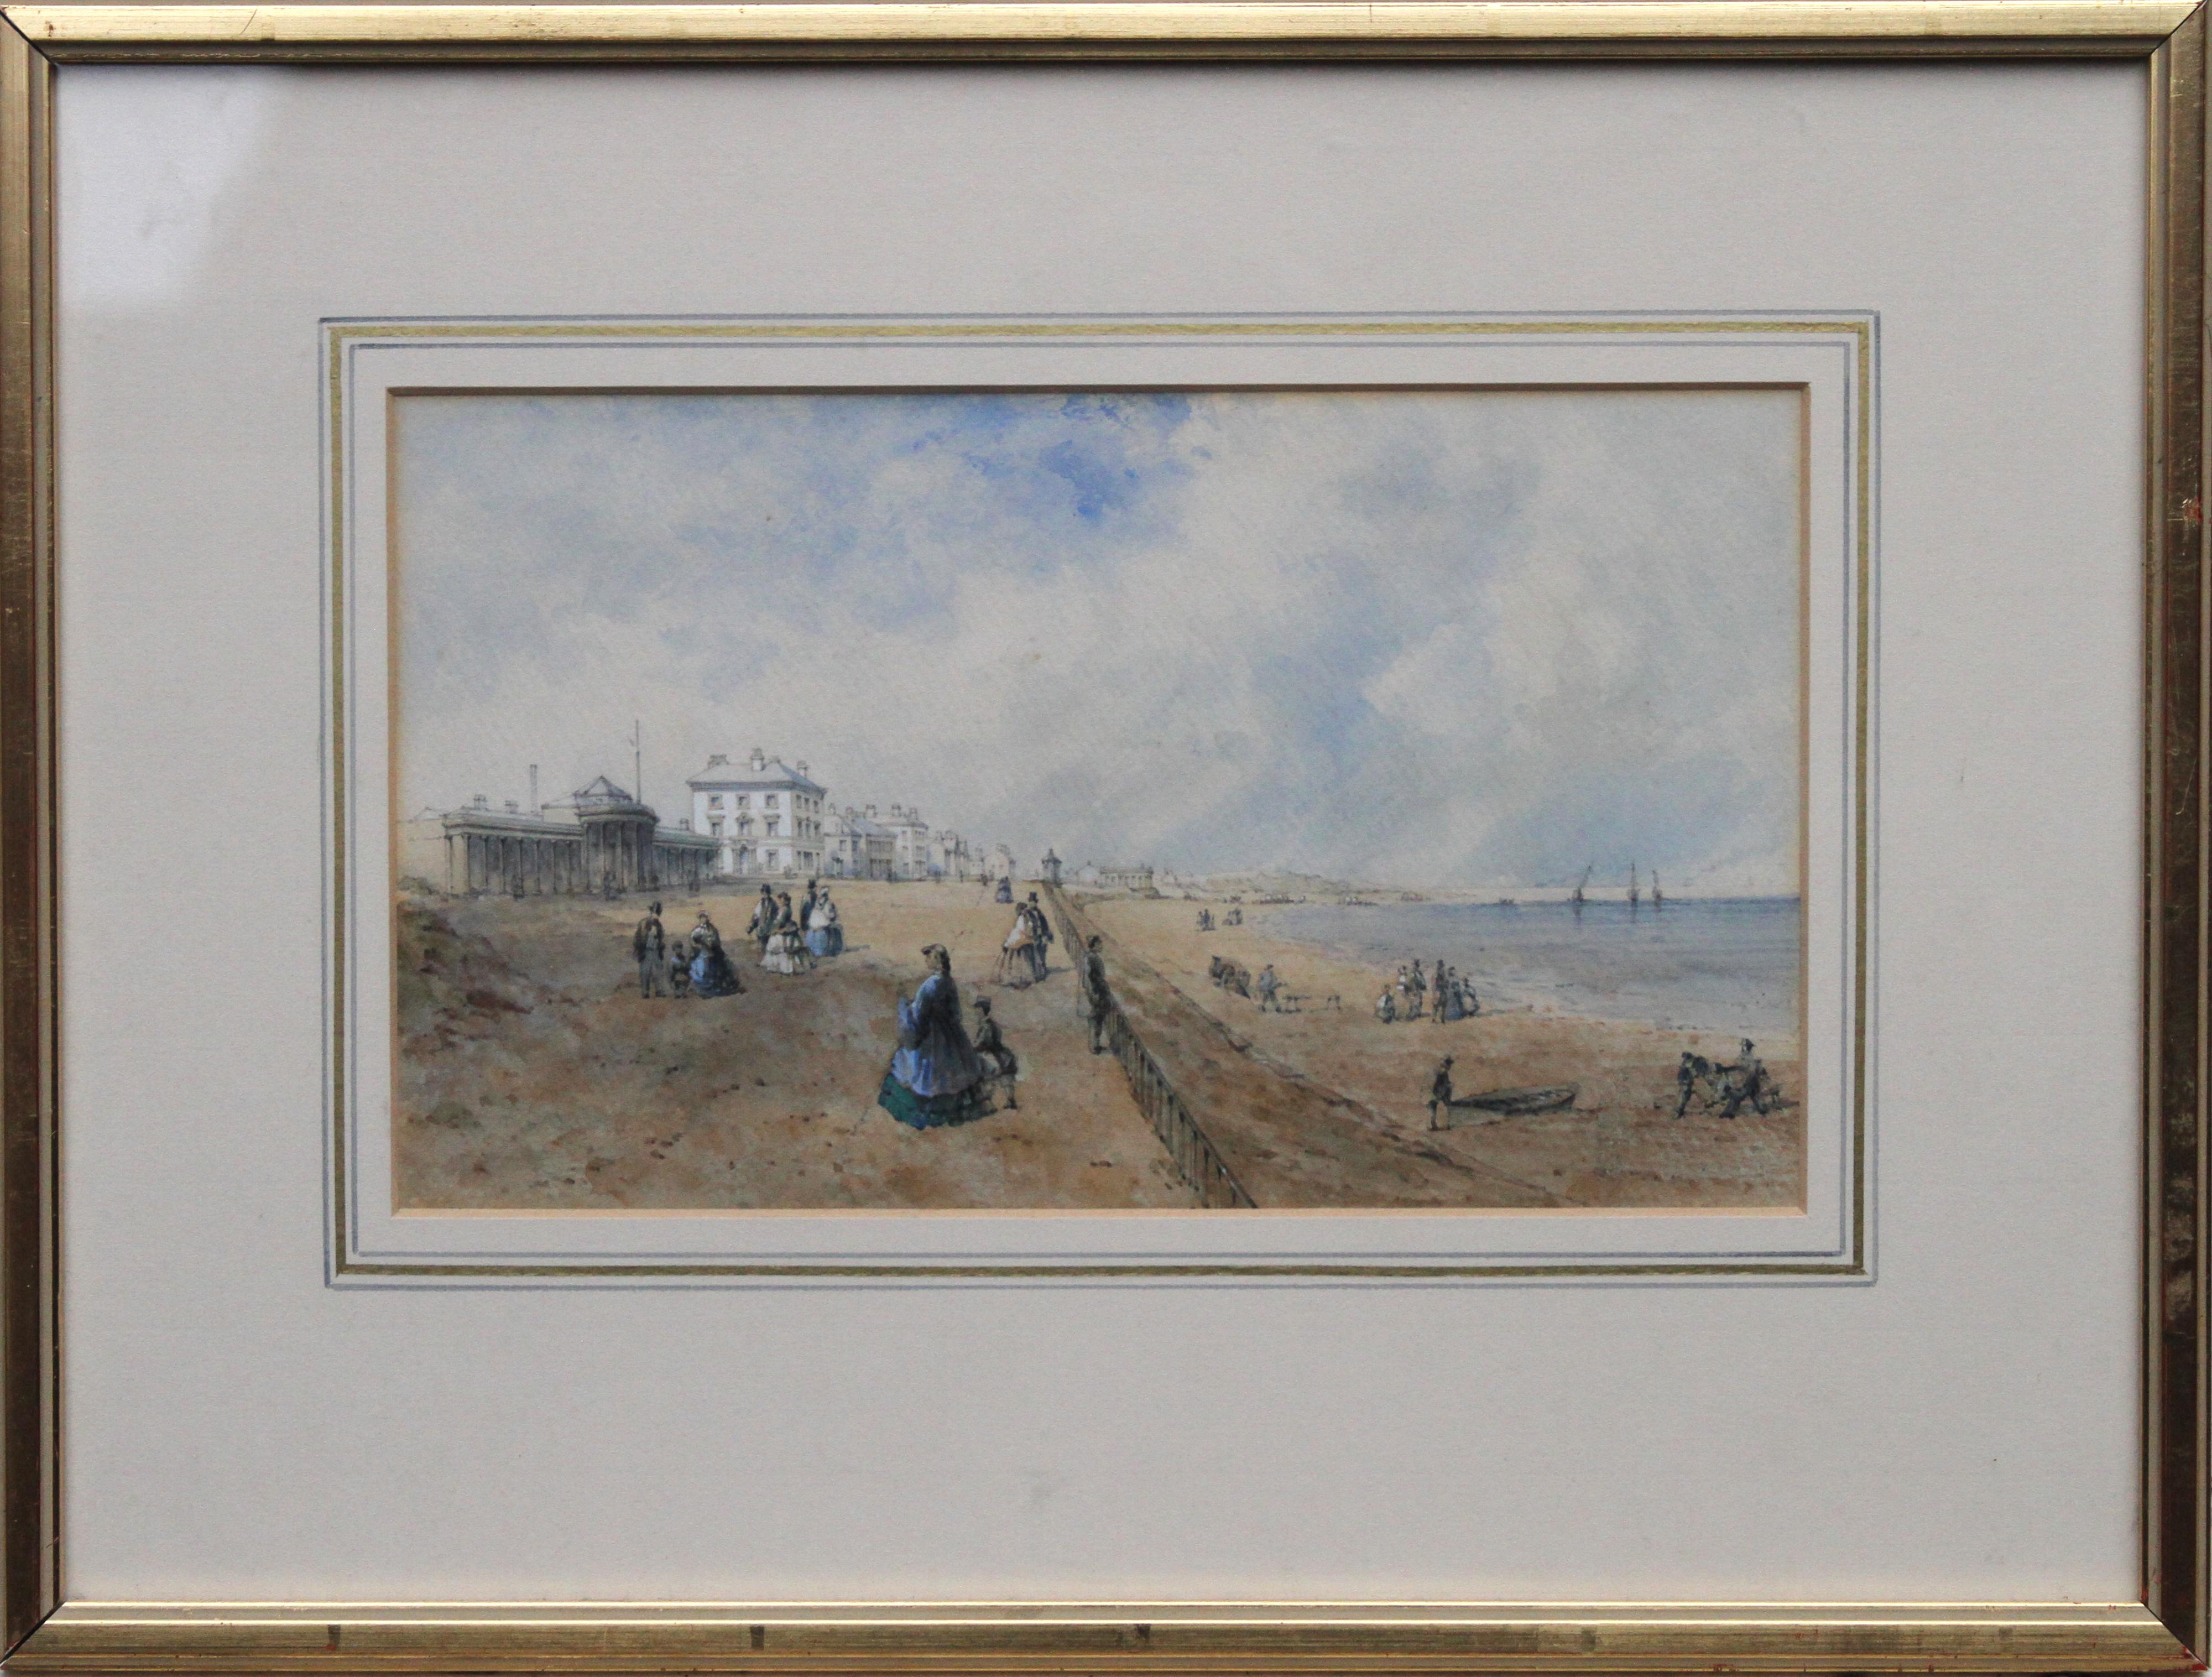 Promenade at Southport - Aquarelle d'art britannique du 19e siècle représentant un paysage côtier